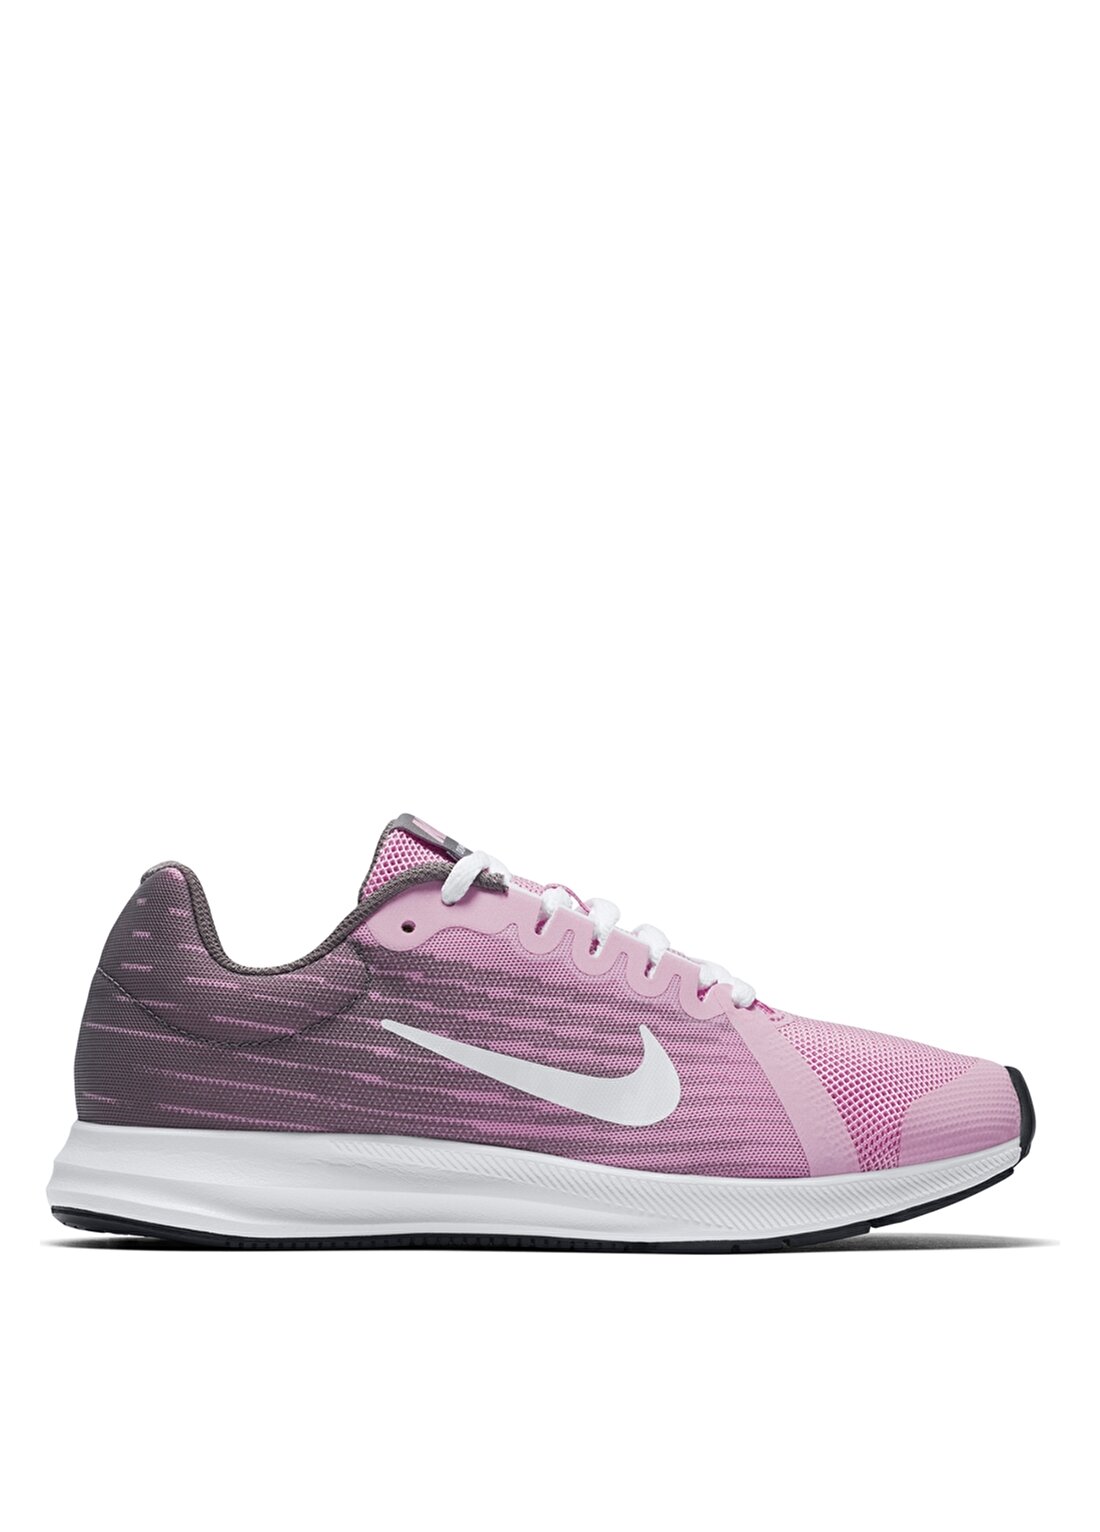 Nike Downshifter 8 (Gs) Running 922855-602 Yürüyüş Ayakkabısı